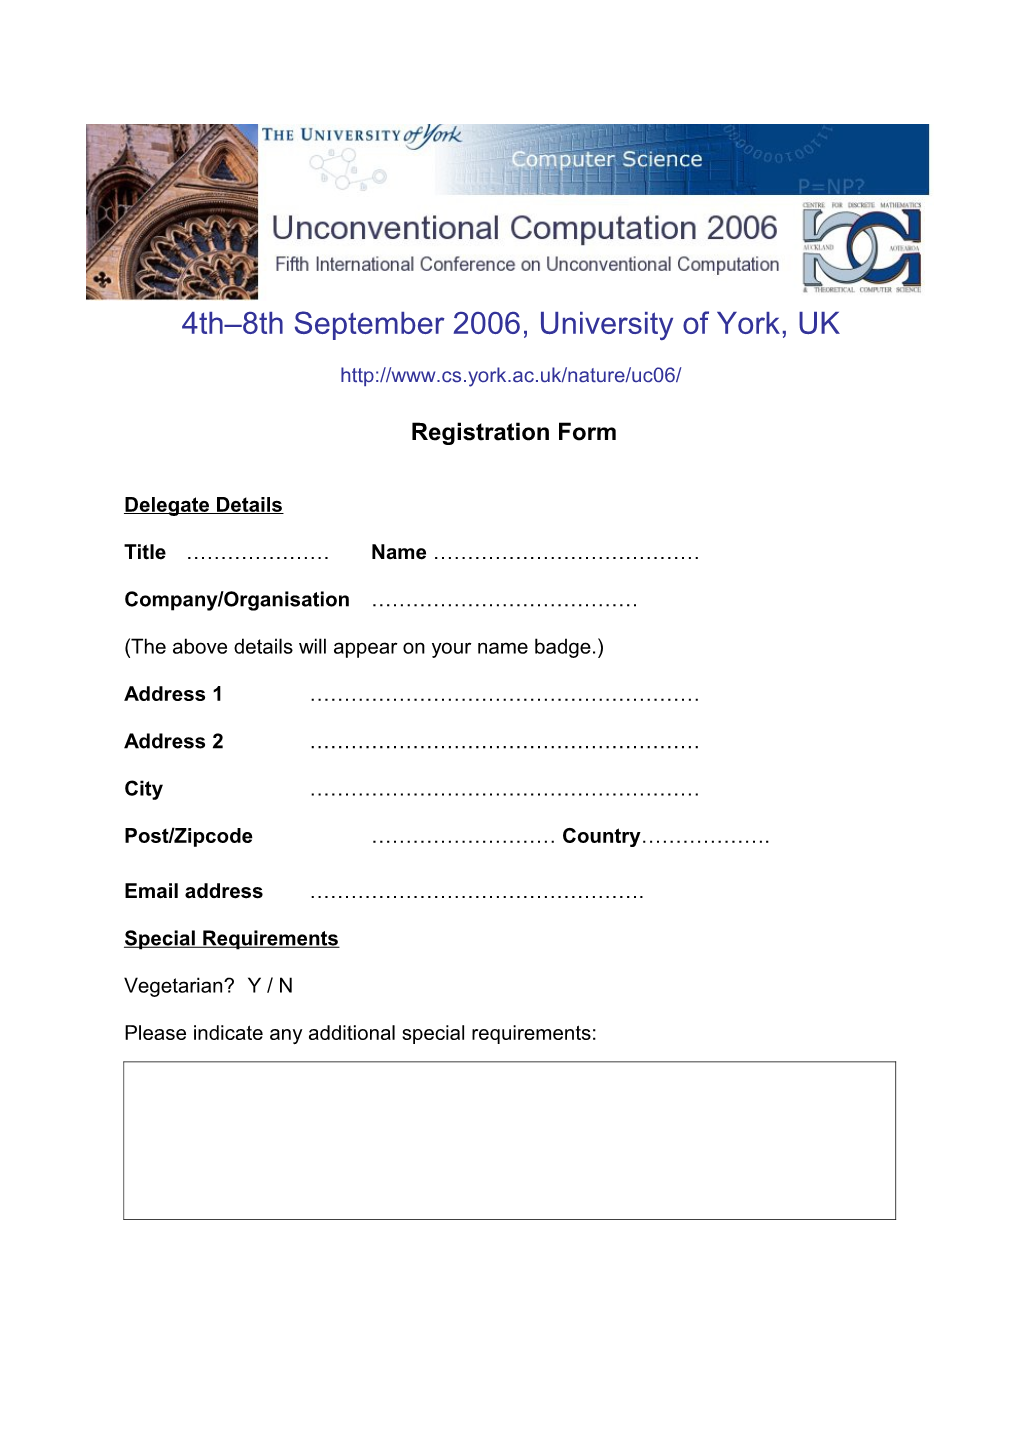 Registration Form s13